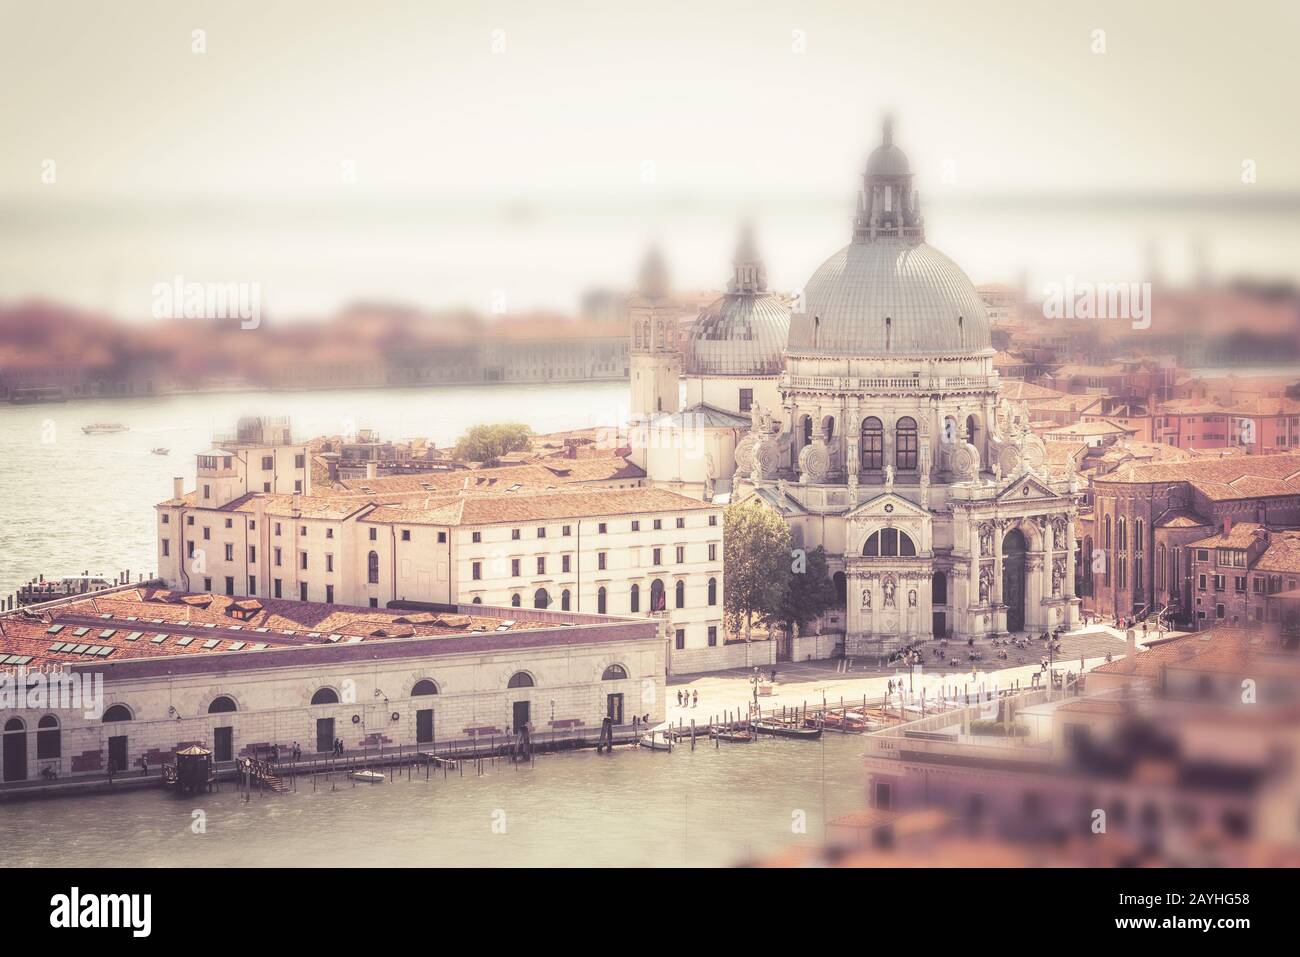 Luftaufnahme von Venedig, Italien. Miniatur-Neige-Shift-Effekt. Panorama von Venedig von oben im Sommer. Wundervolle Stadtlandschaft Venedigs mit Inseln. Stockfoto